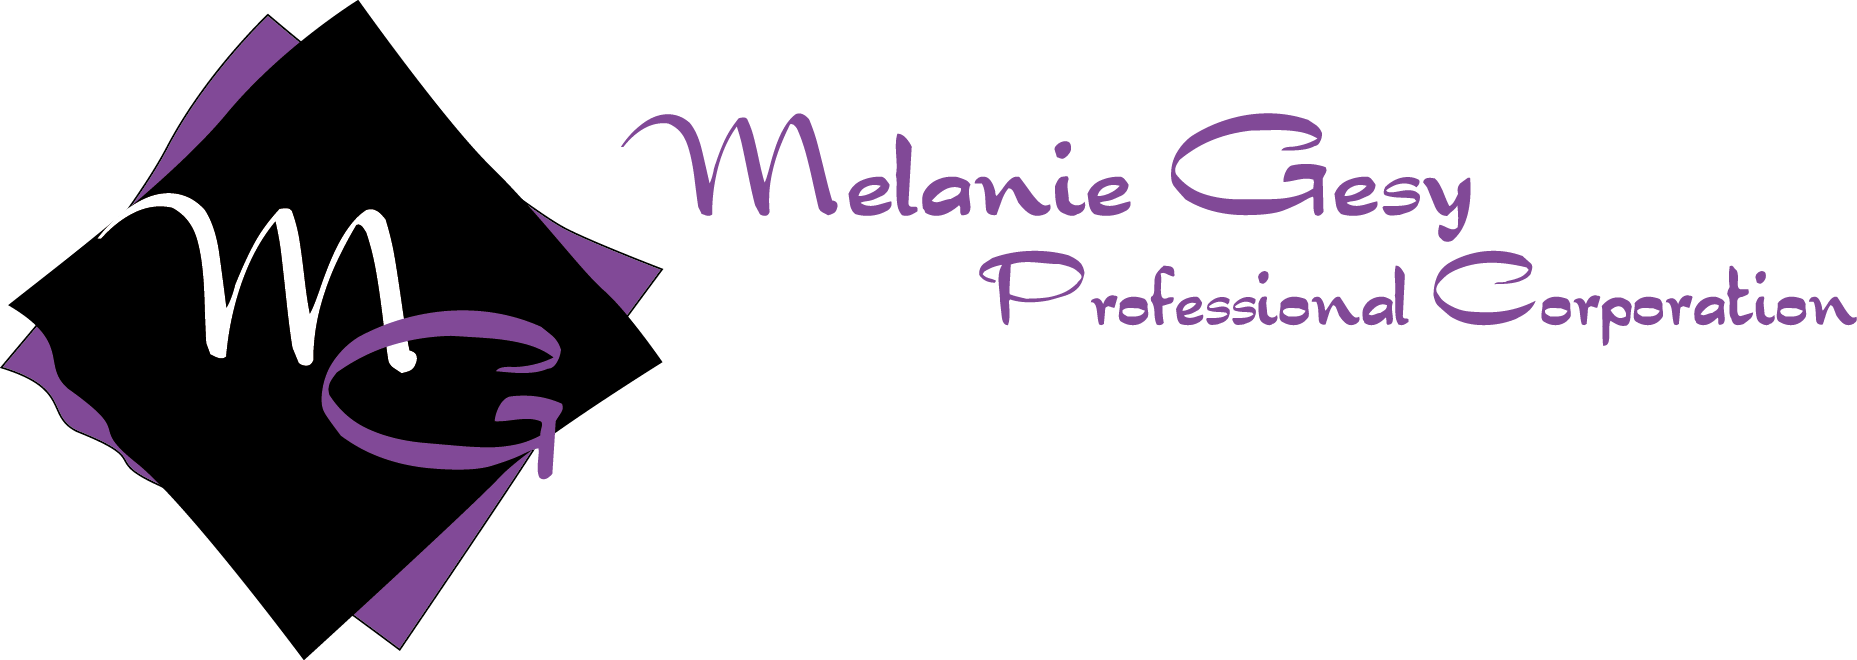 Melanie Gesy logo